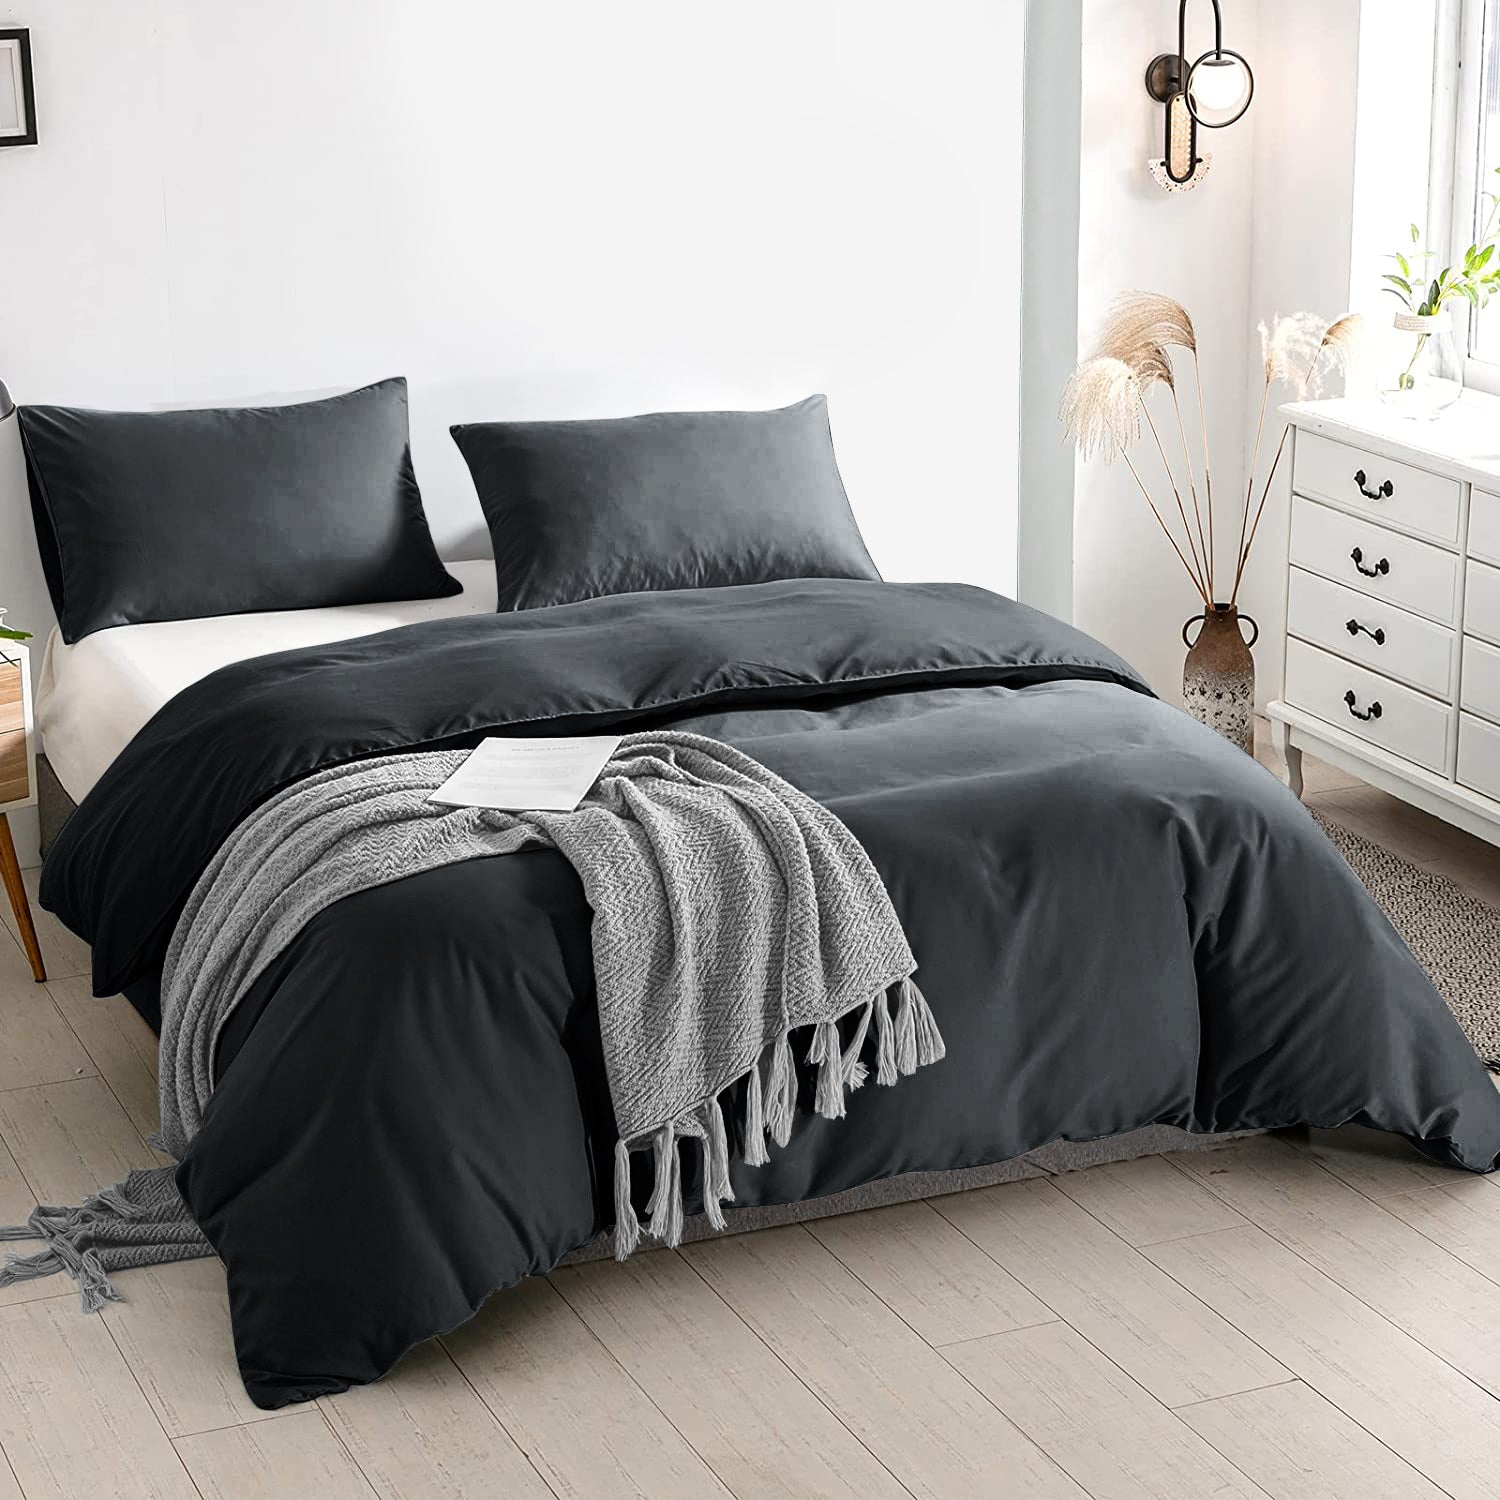 Black Duvet Cover Plain Bedding Set